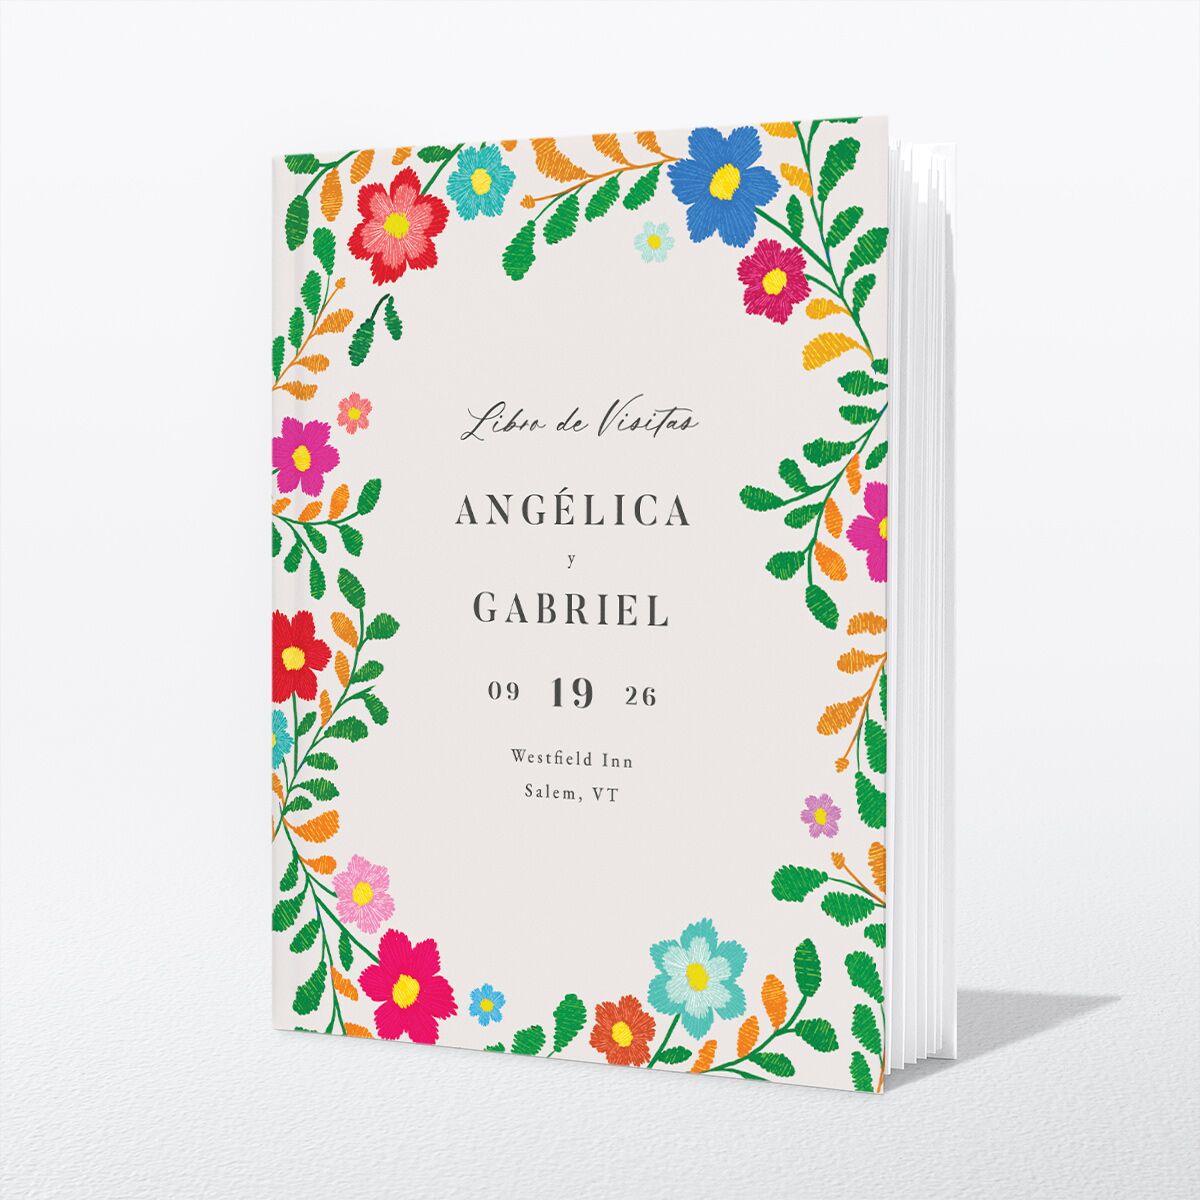 Bordados Florales Wedding Guest Book front